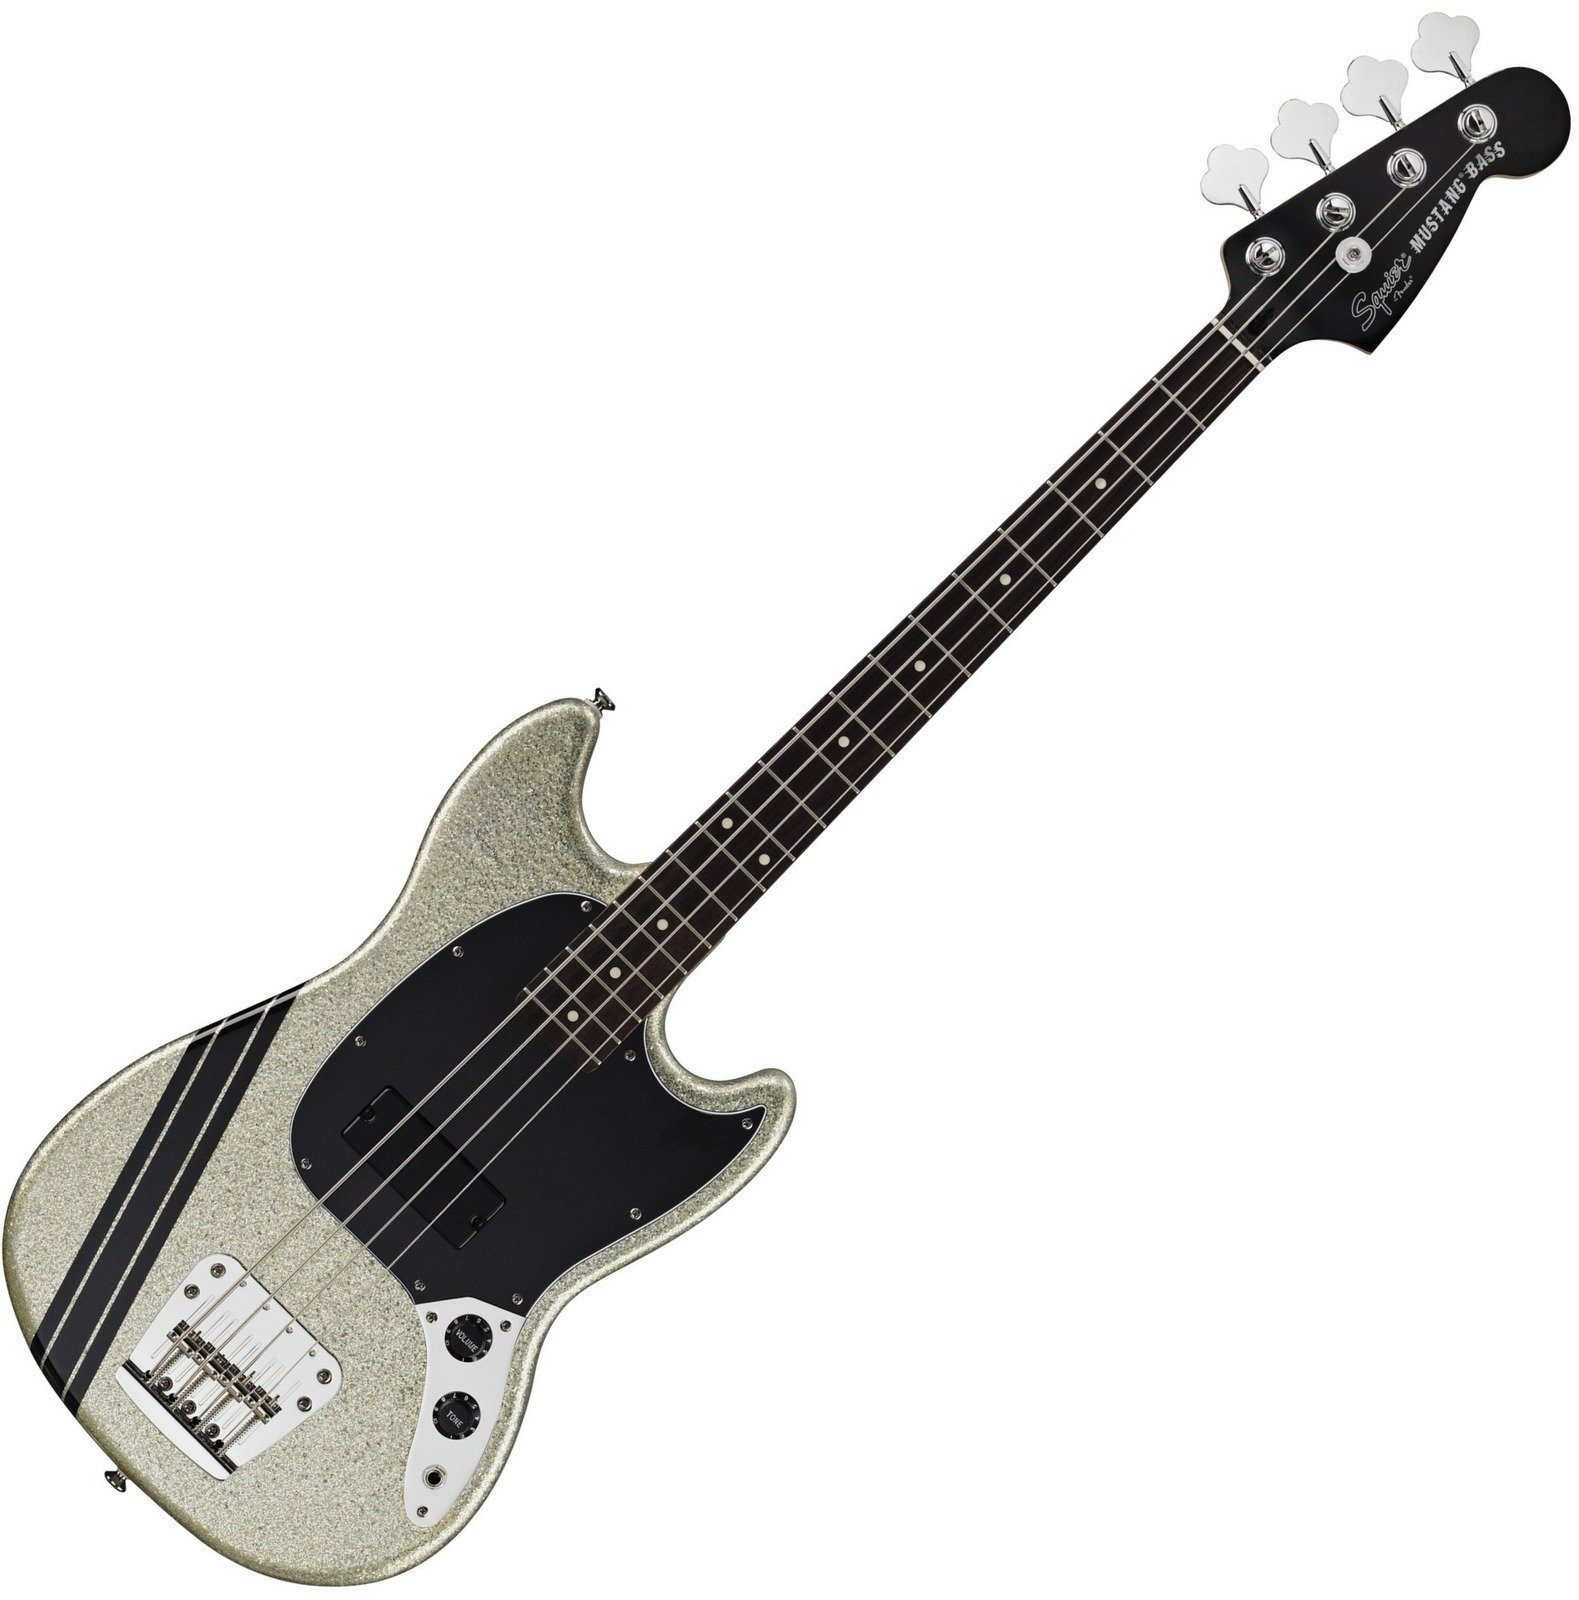 Baixo de 4 cordas Fender Squier Mikey Way Mustang Bass Large Flake Silver Sparkle